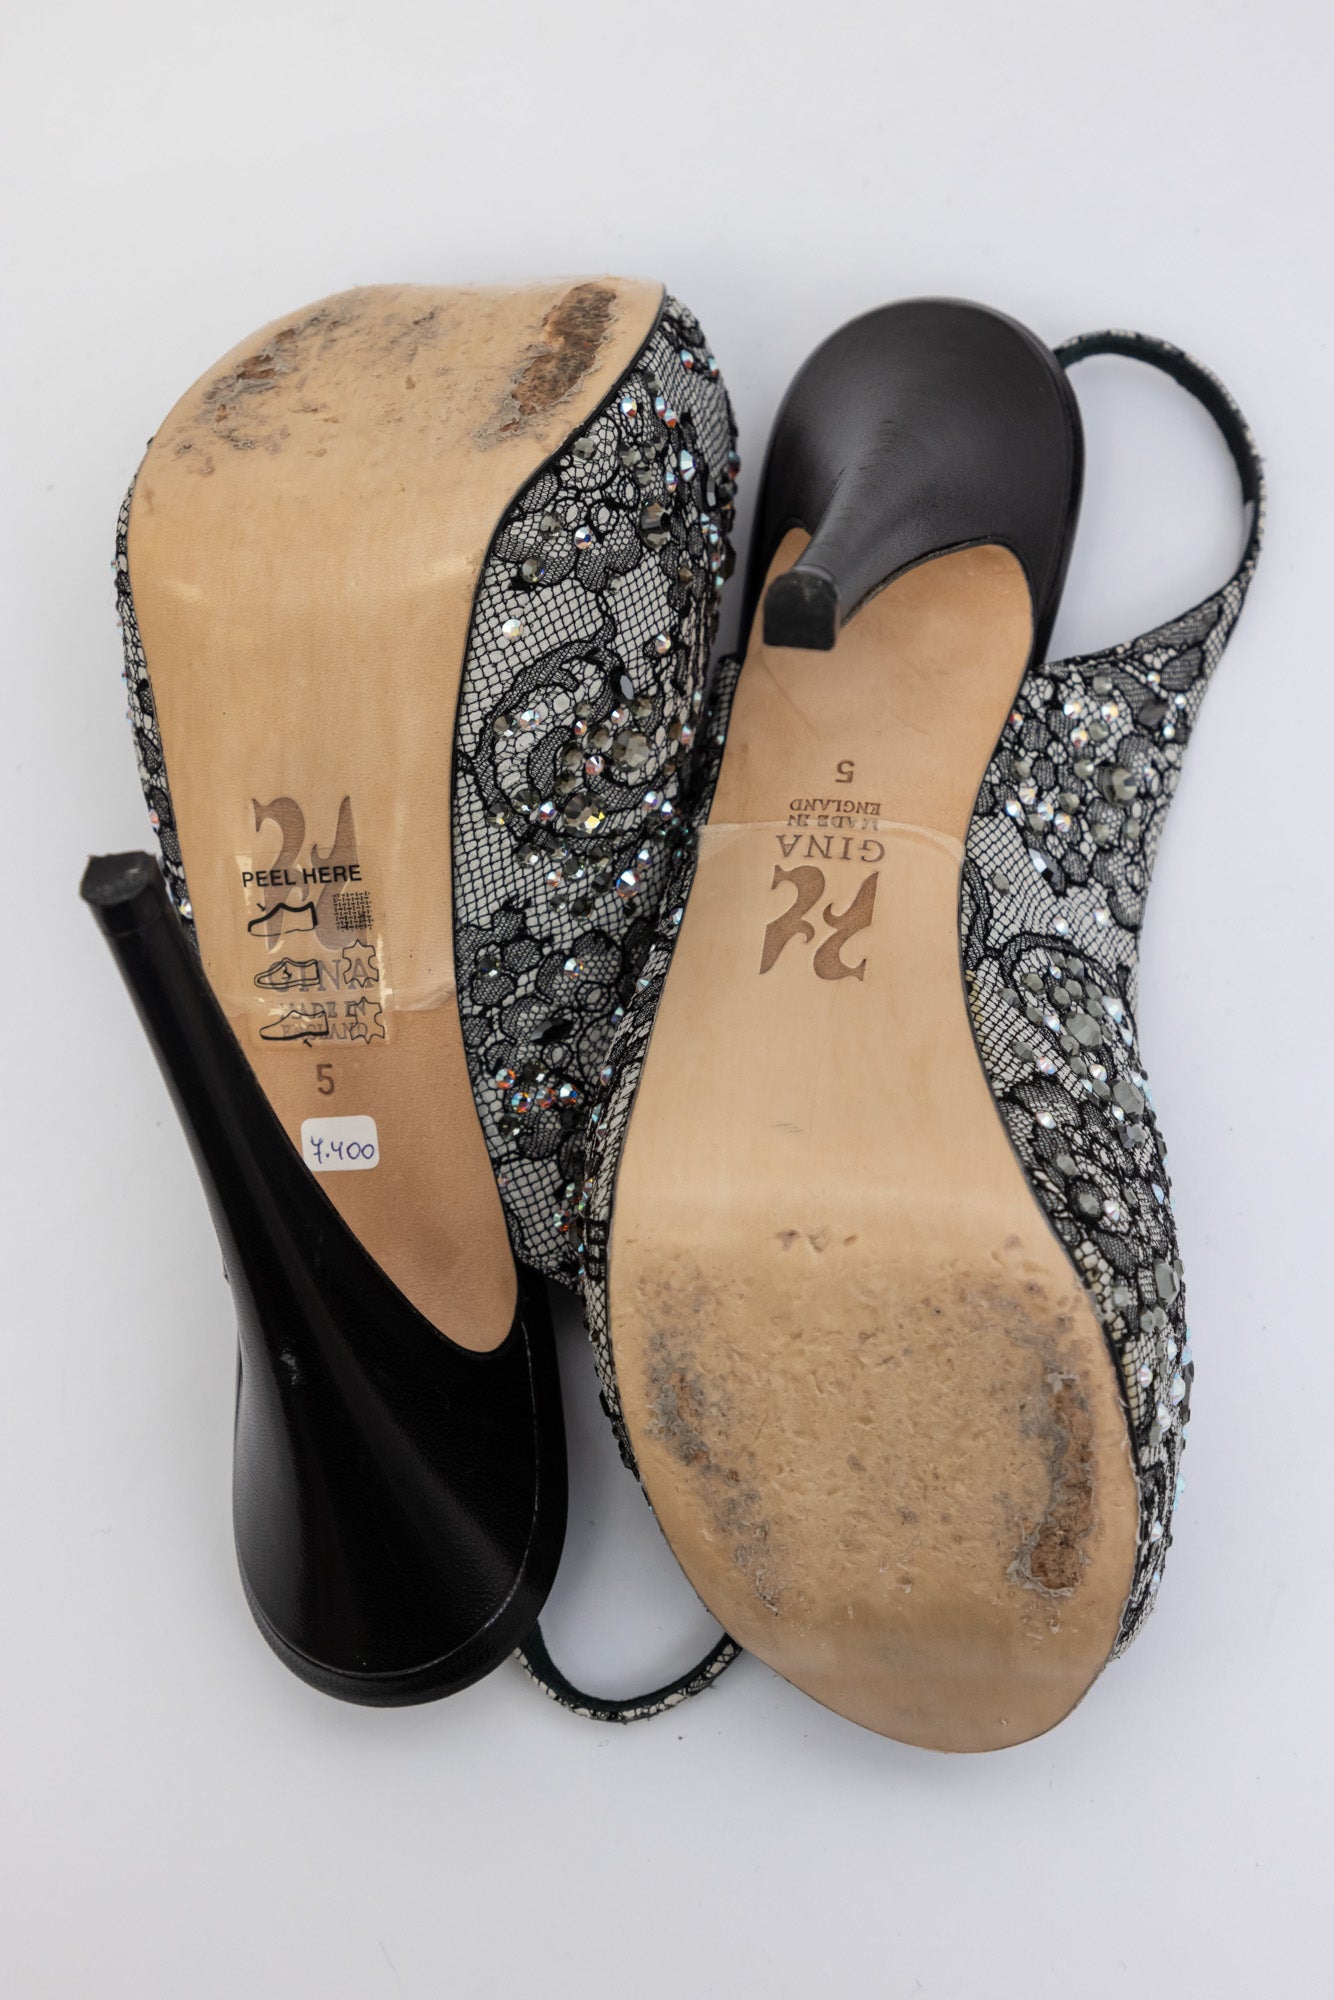 GINA Peep-Toe-Slingback-Plateaupumps mit schwarzer Spitze und Kristallverzierung – elegante Luxusschuhe